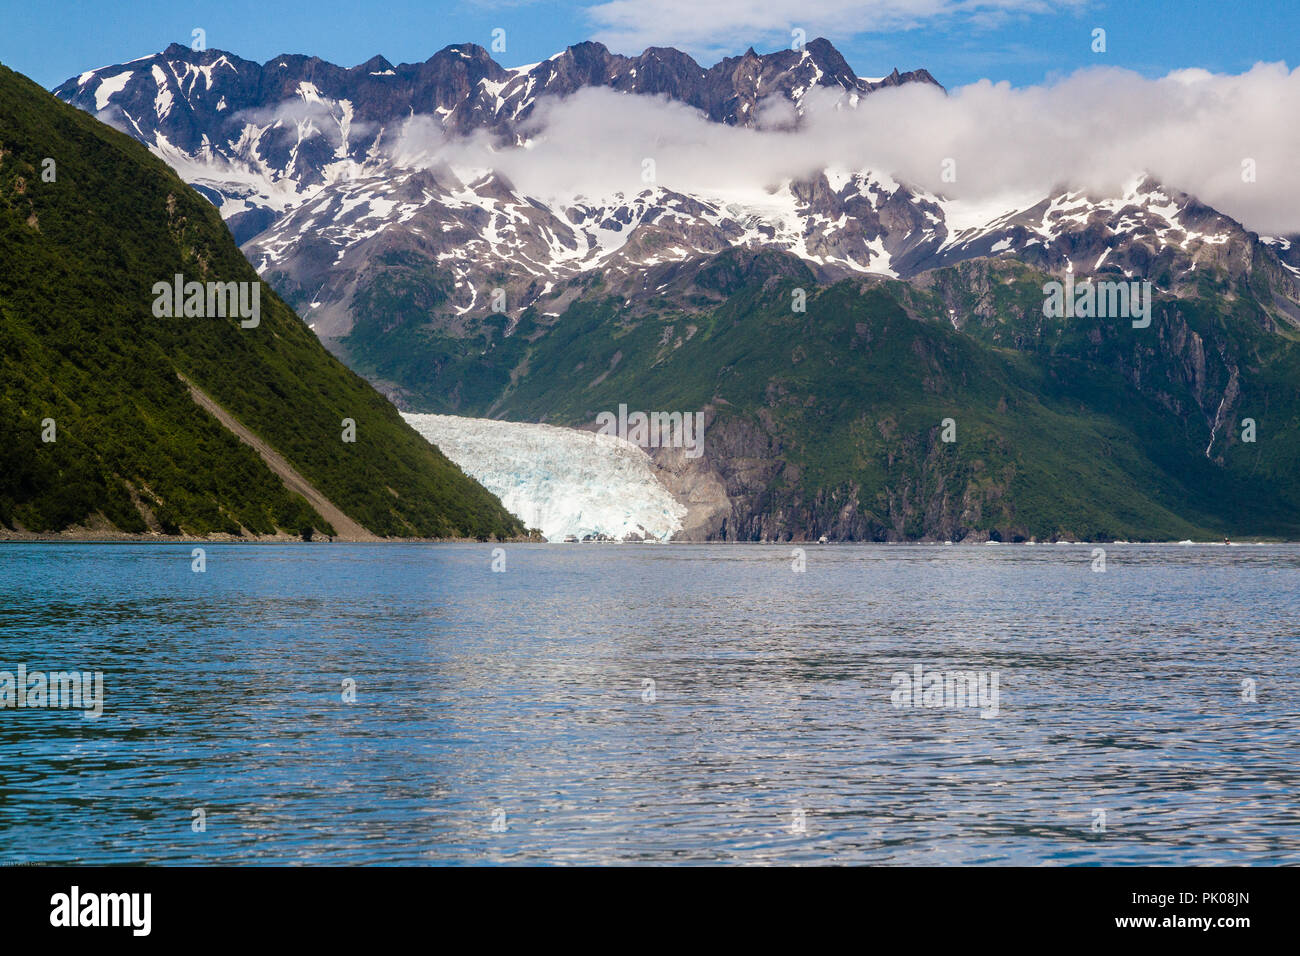 Ansicht der Aialik Gletscher in der Aialik Bay, Alaska, USA. Wasser im Vordergrund, Green mountain glacier Links, Schnee auf den Bergen auf der rechten, blauen Himmel. Stockfoto